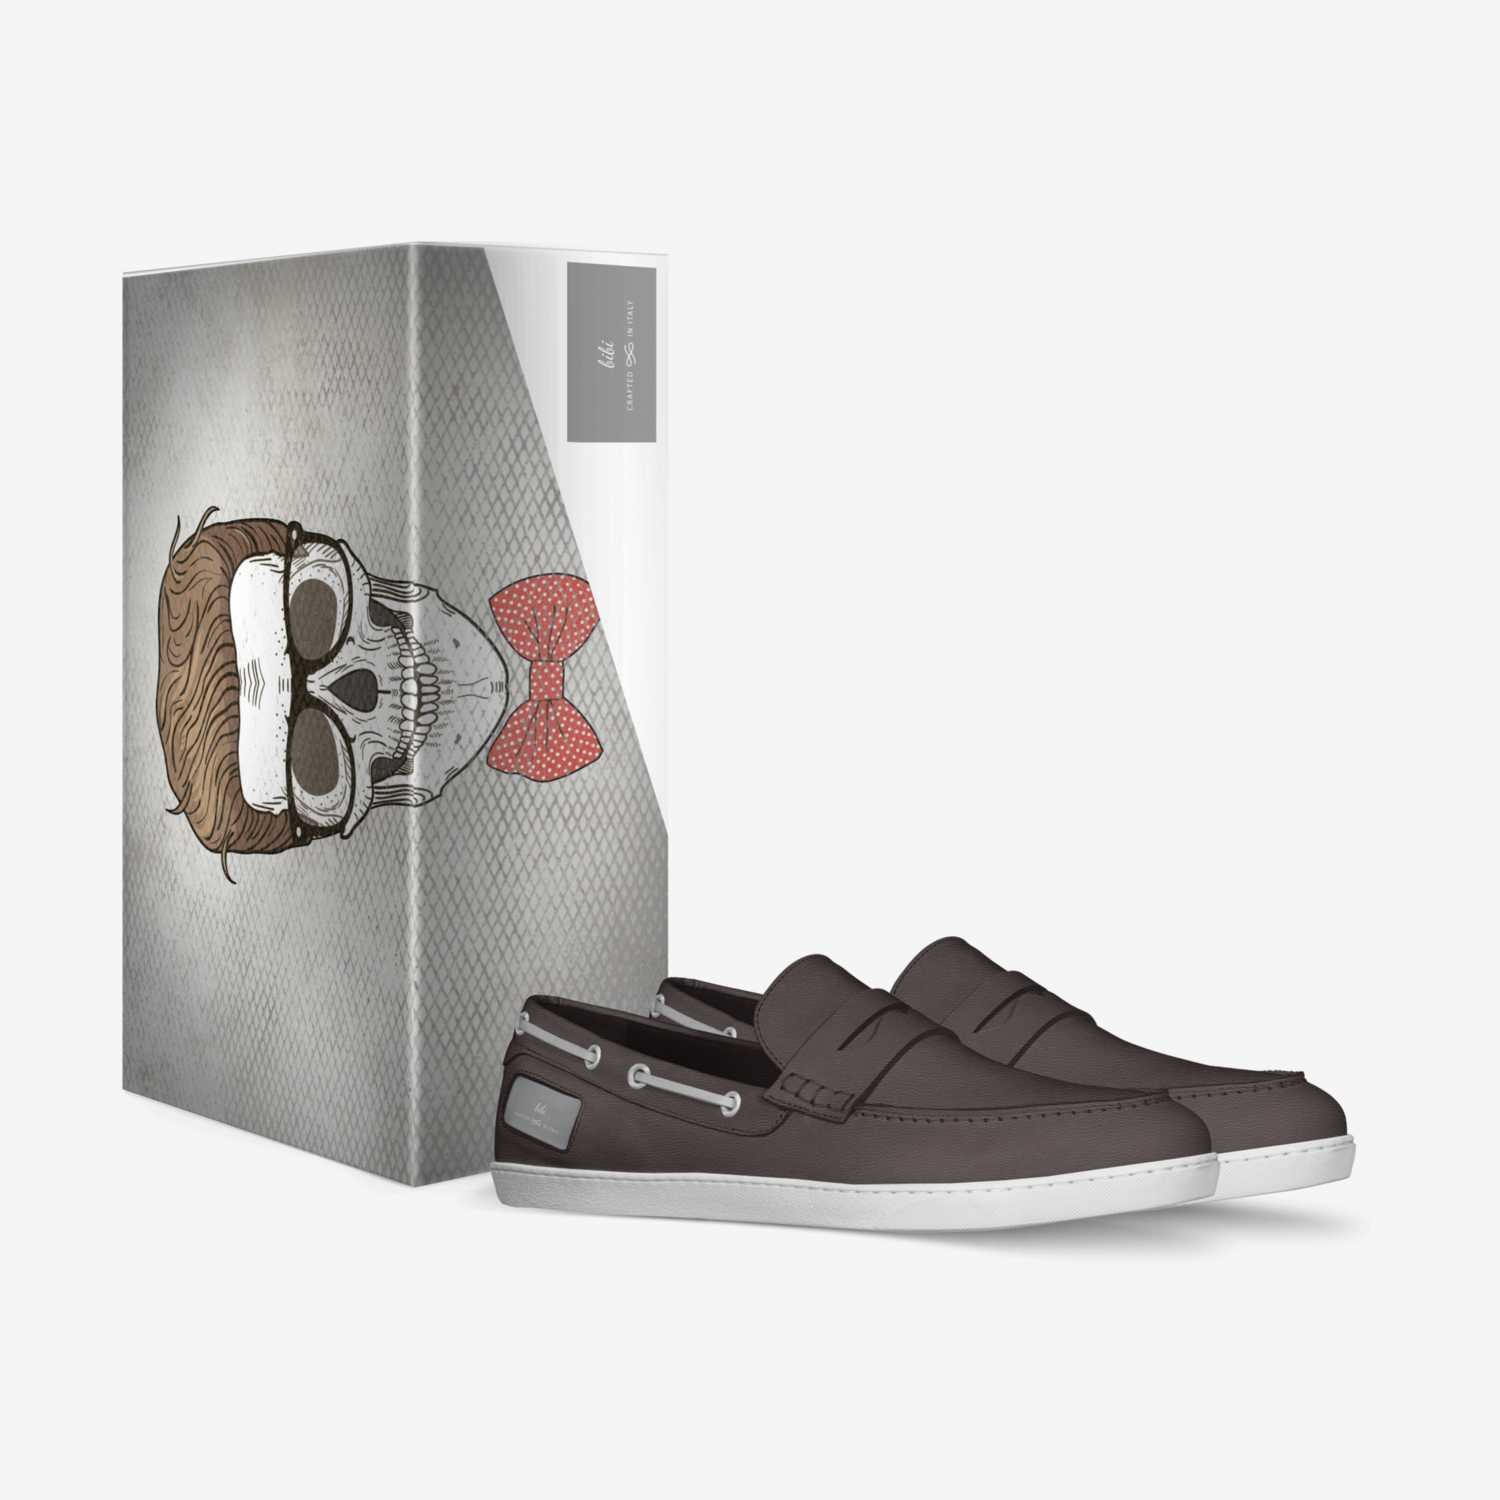 BiBi custom made in Italy shoes by Robel Yemane | Box view